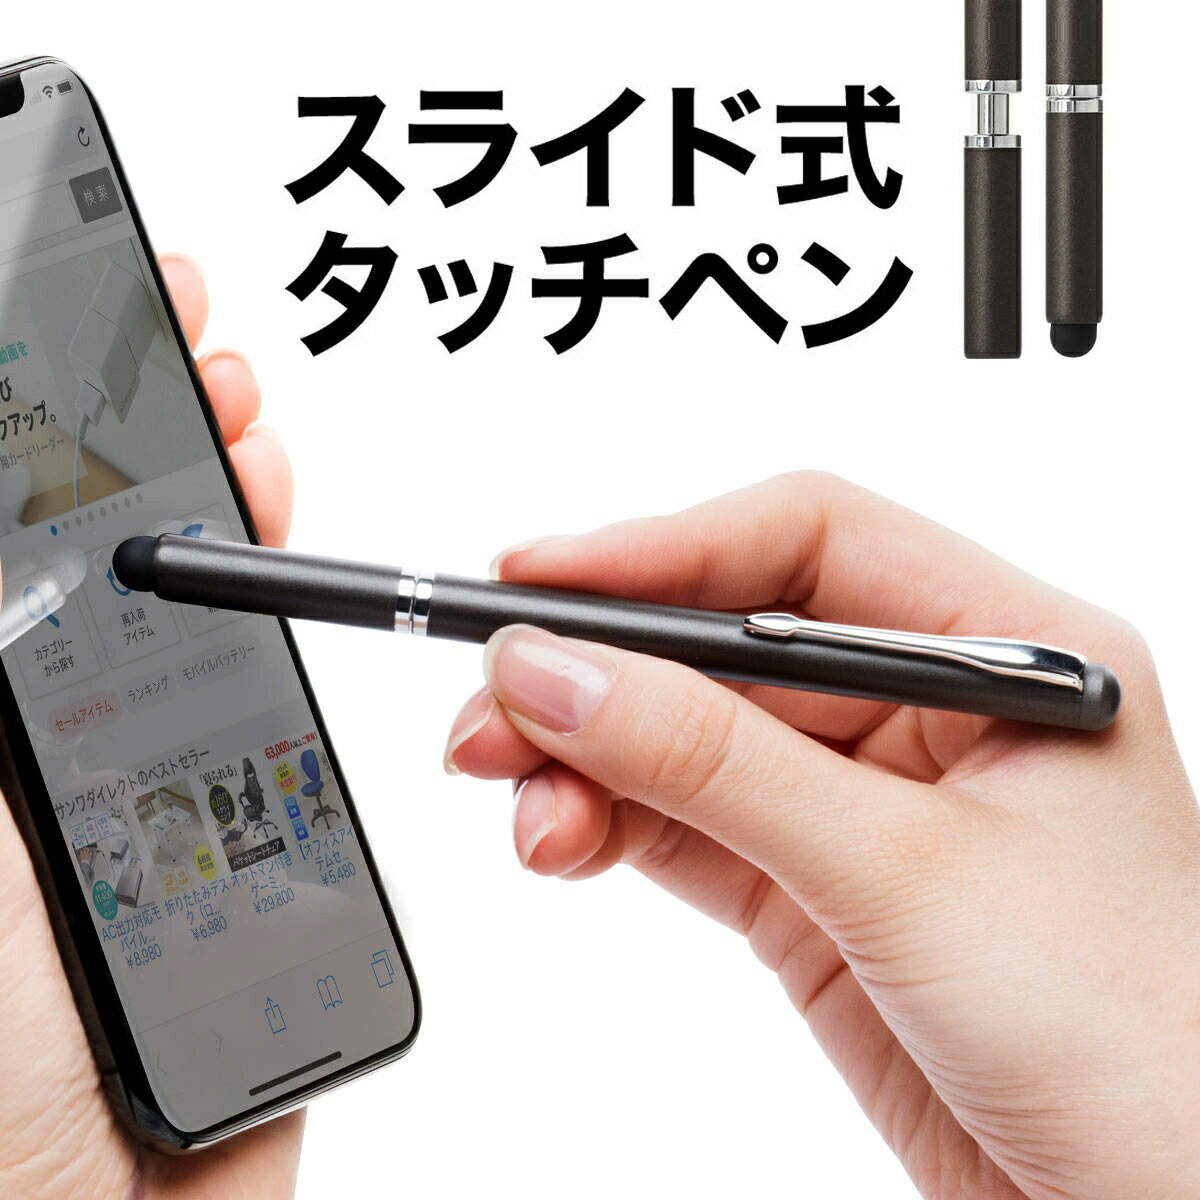 タッチペン iPhone・iPad・タブレット・スマートフォン(スマホ)対応 スライドキャップ シリコン クリップ付き ブラック スタイラスペン